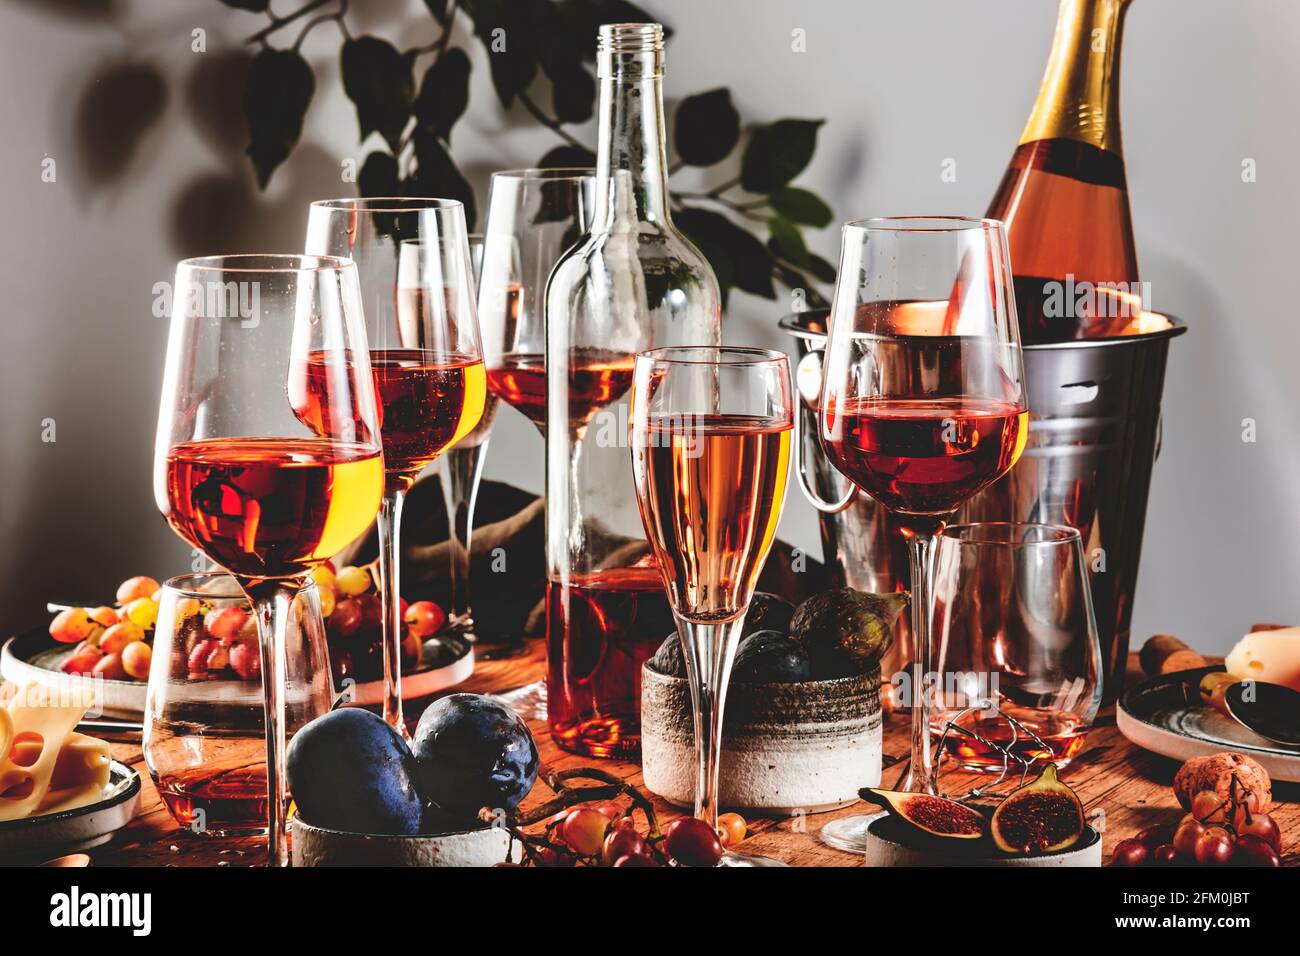 Pink Rose Wine Glasses Bottles Table Served Summer Festive Dinner Stock  Photo by ©5PH 474095700